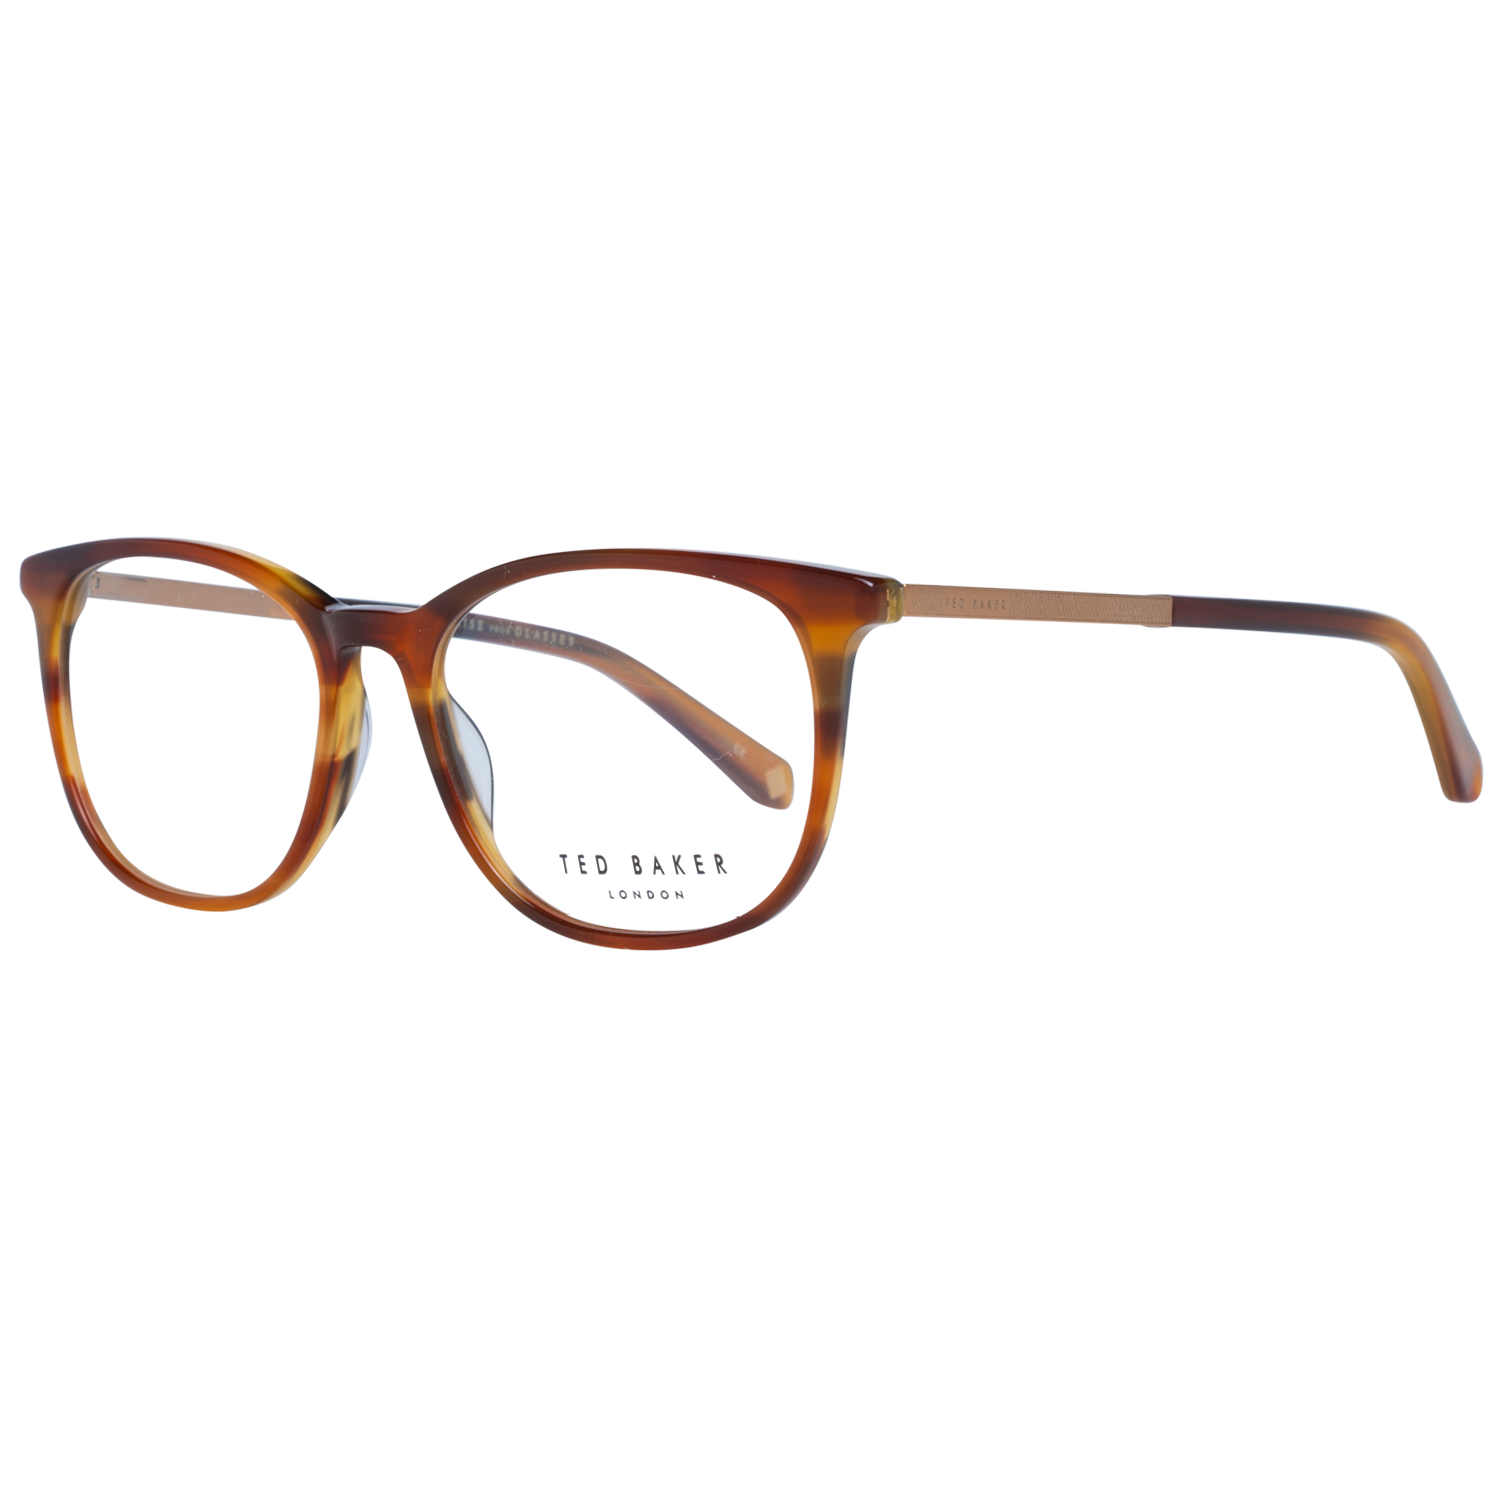 Ted Baker Frames Ted Baker Optical Frame Prescription Glasses TB8219 351 52 Eyeglasses Eyewear UK USA Australia 